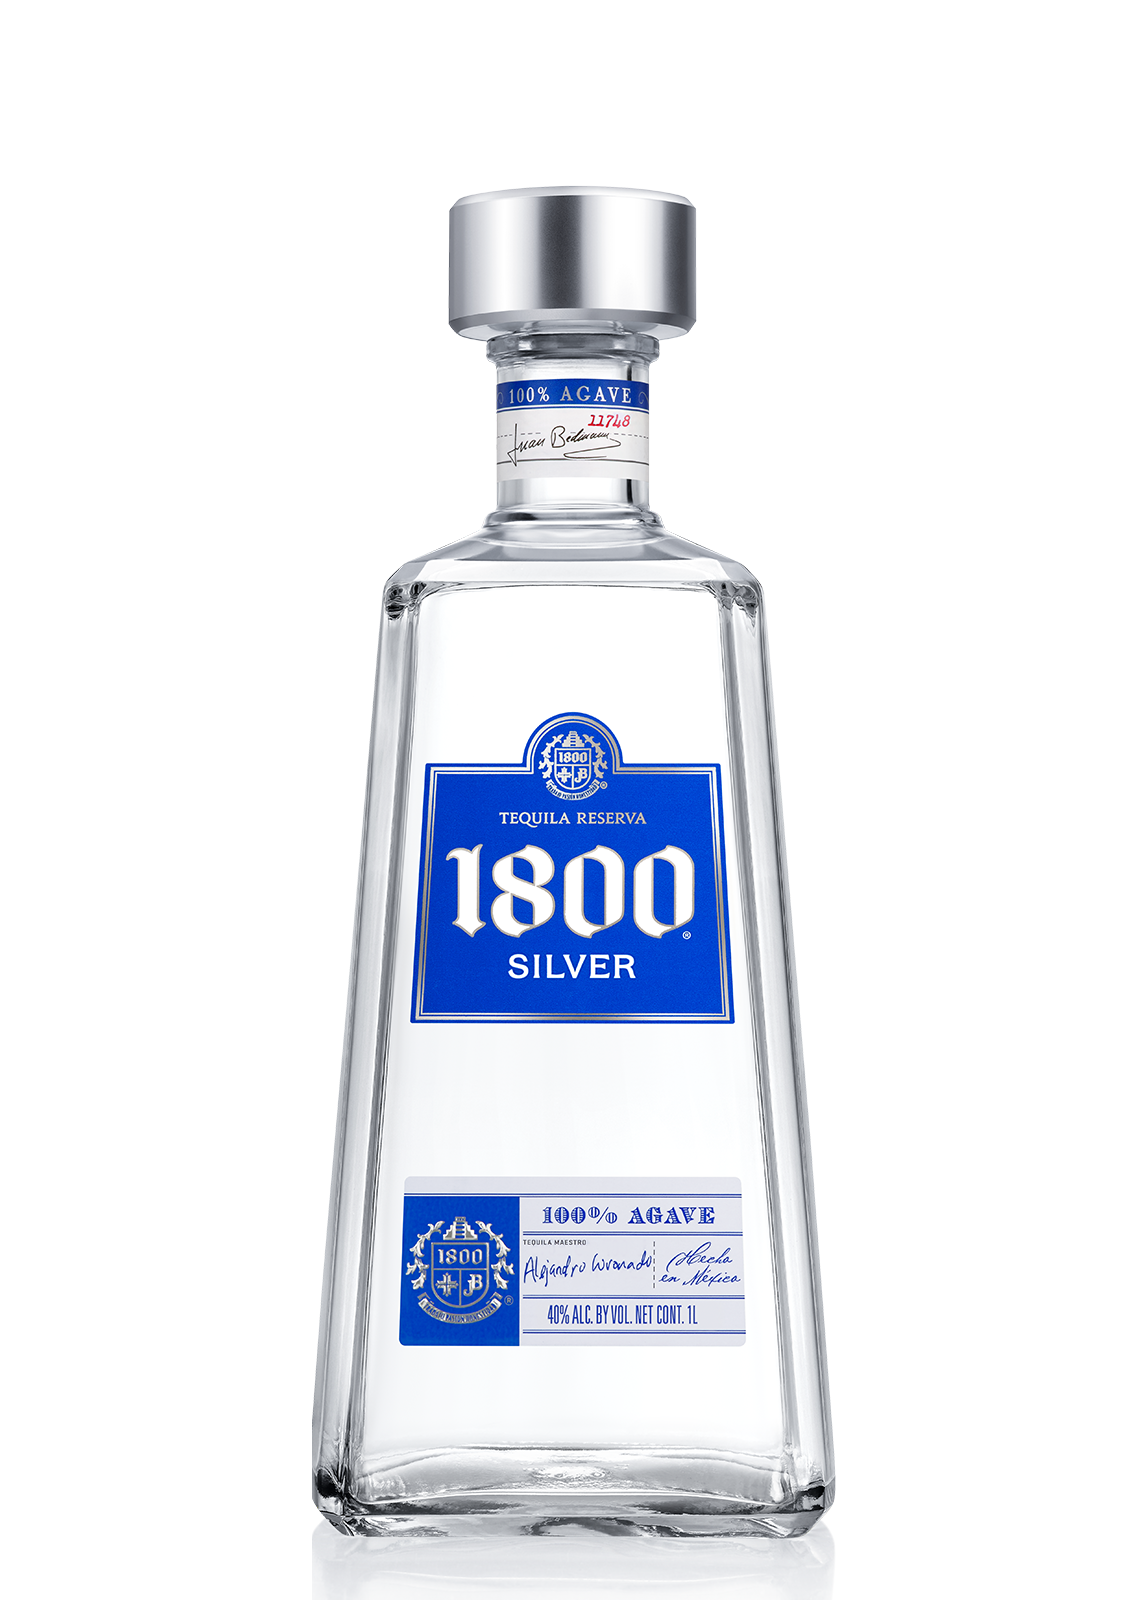 Текила 1800. 1800 Silver Tequila. Текила Сильвер Бланко. Tequila 1800 Blanco 700 ml. Reserva текила.